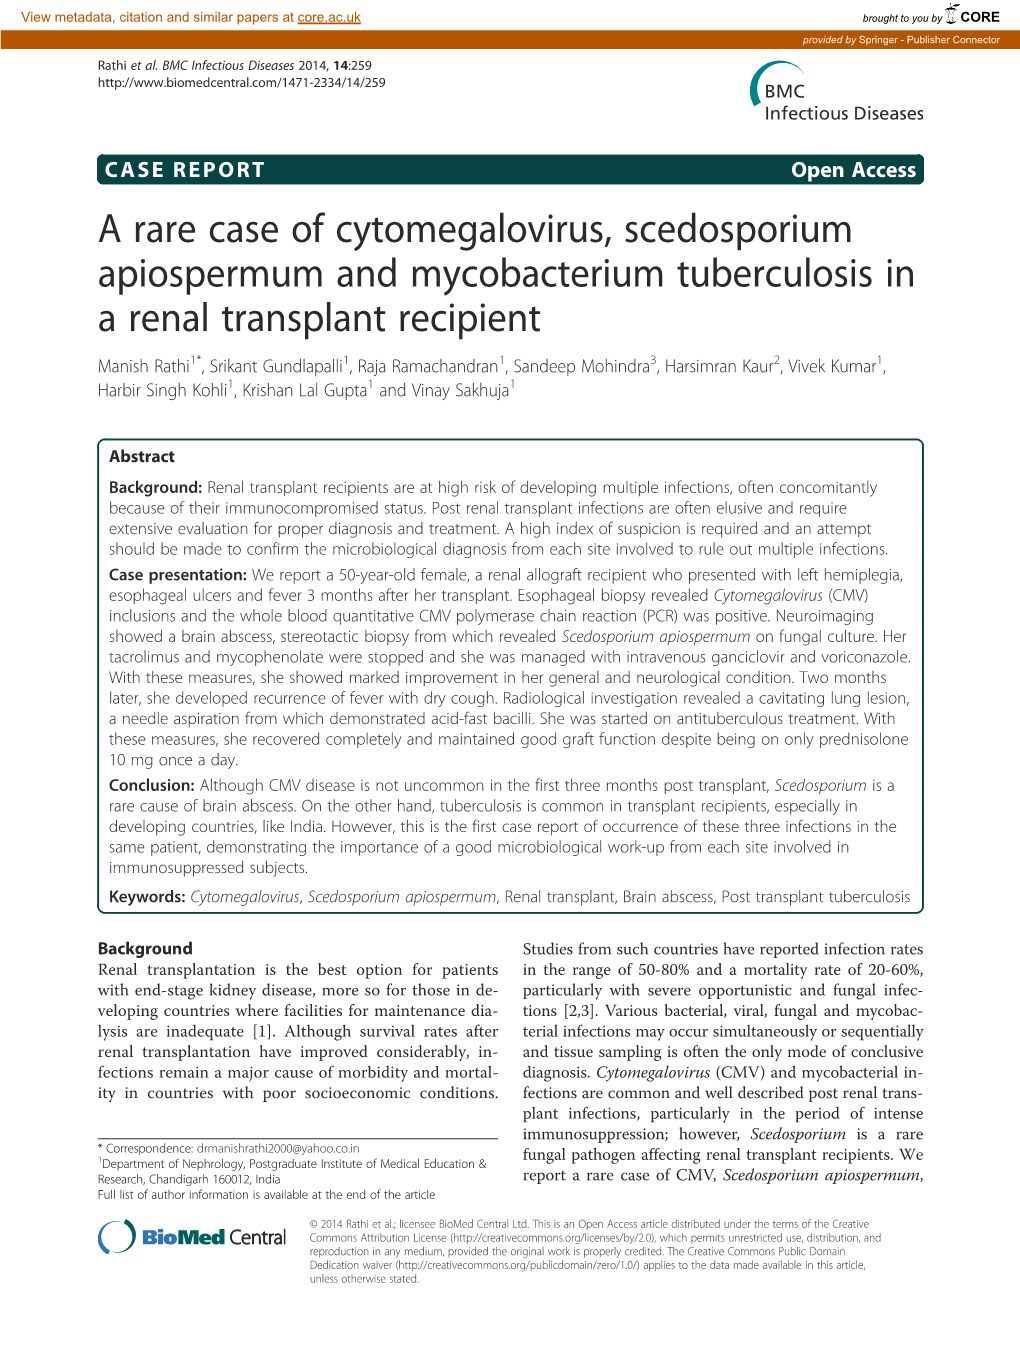 A Rare Case of Cytomegalovirus, Scedosporium